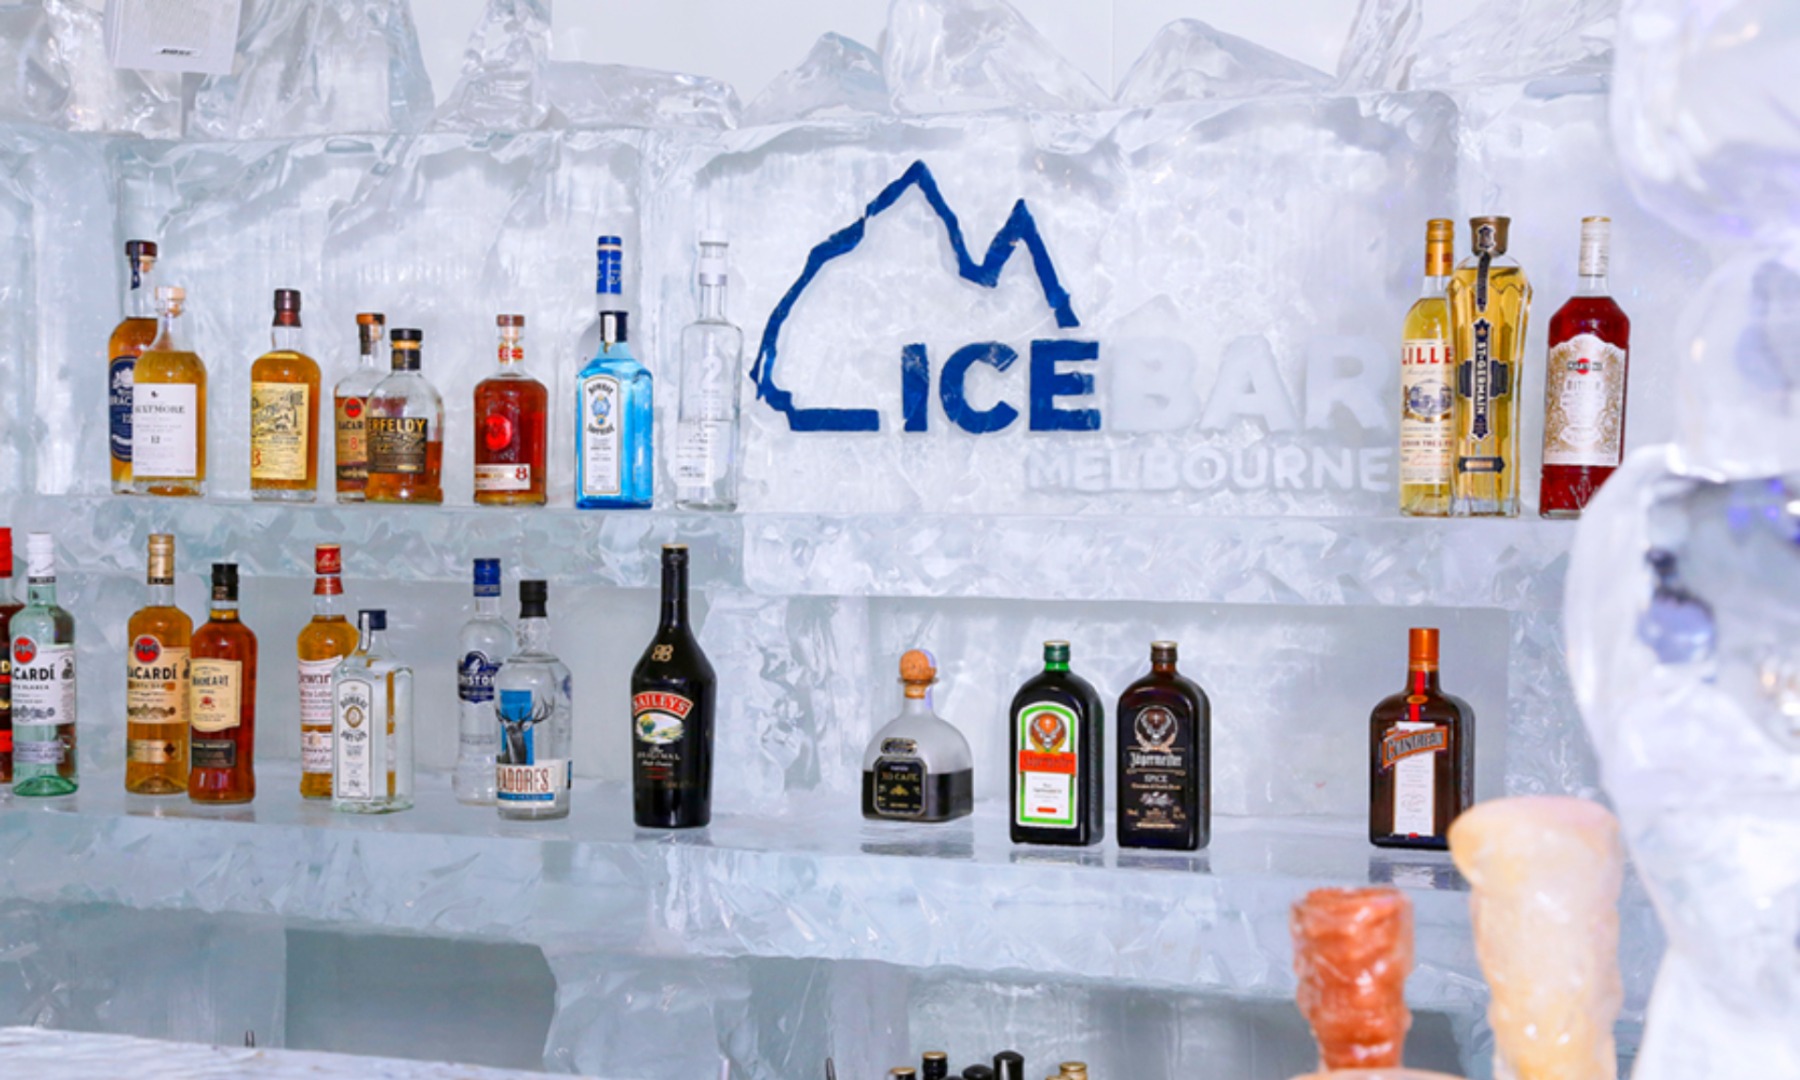 墨爾本 IceBar 冰酒吧體驗